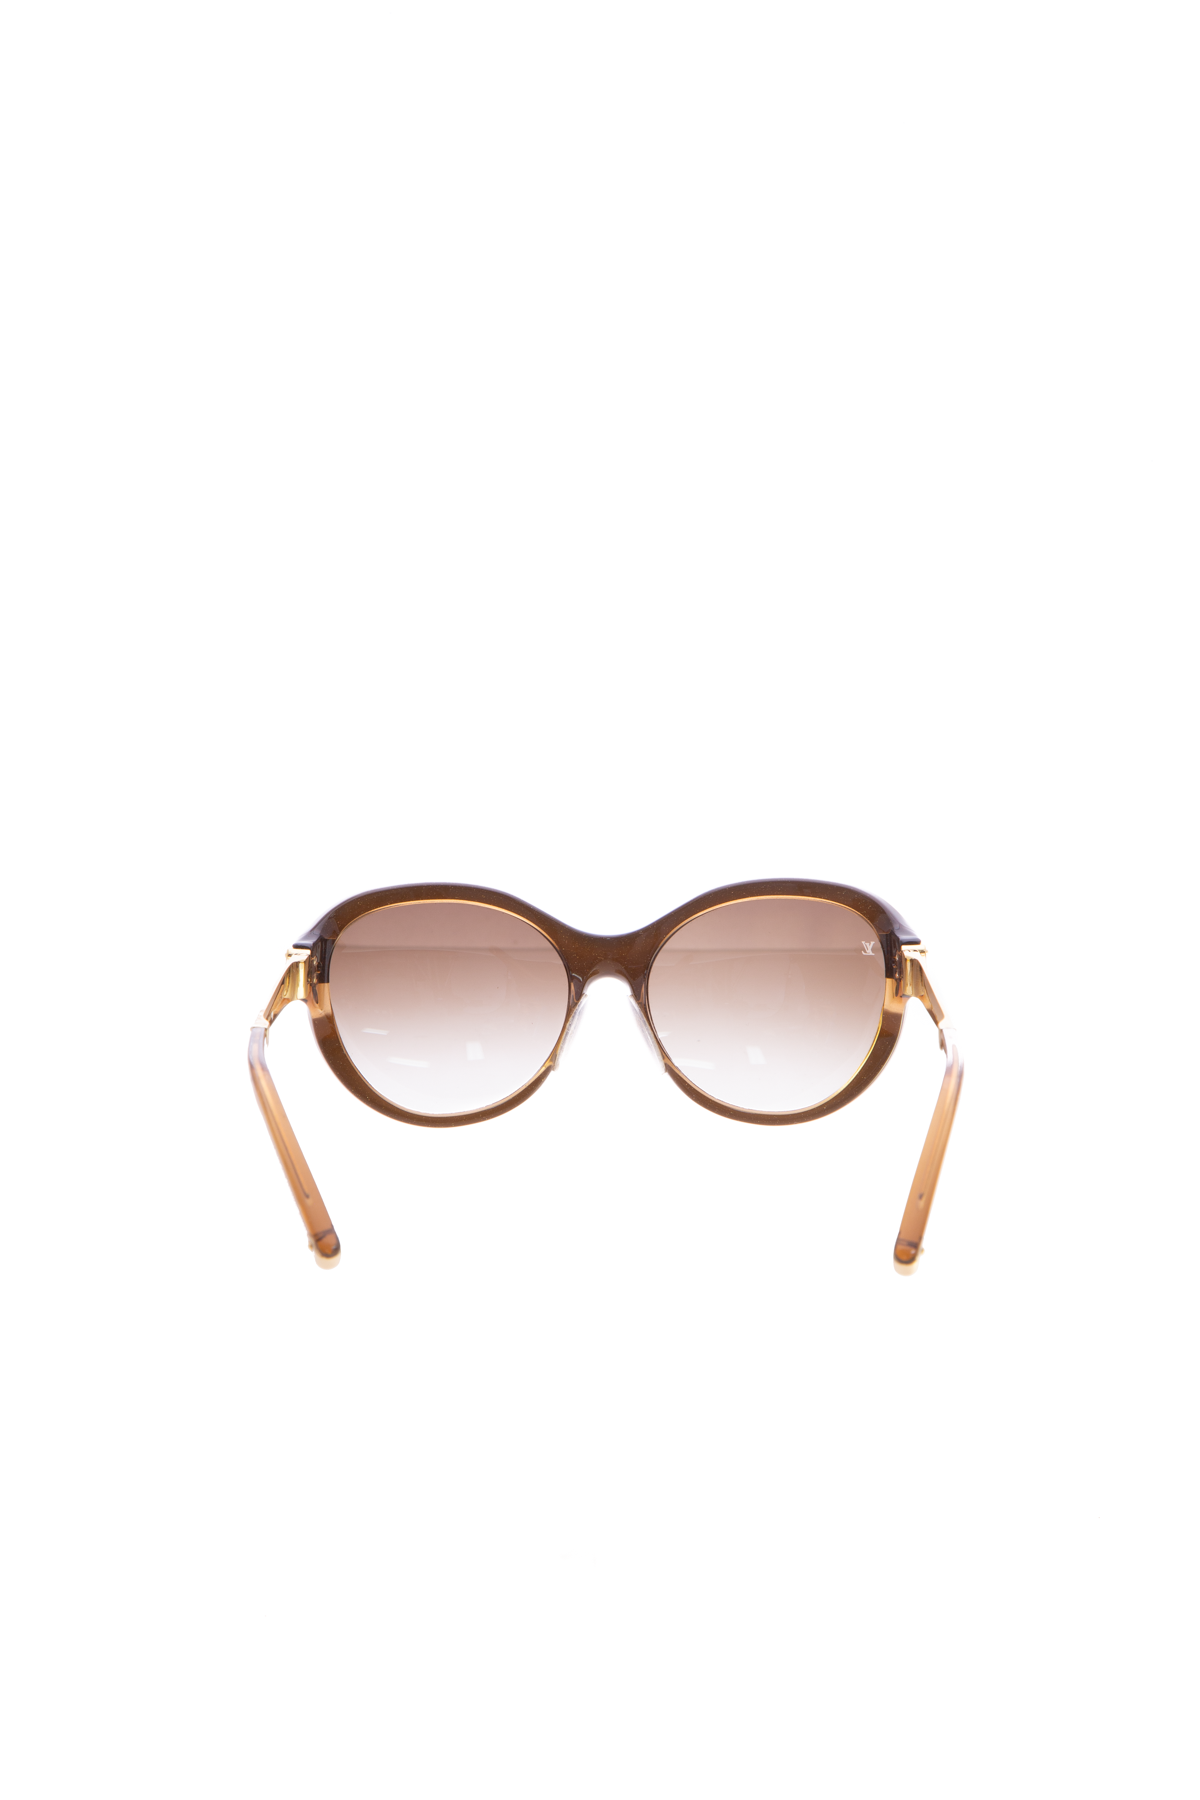 Louis Vuitton, Accessories, New Louis Vuitton Link Pm Cat Eye Sunglasses  Authentic